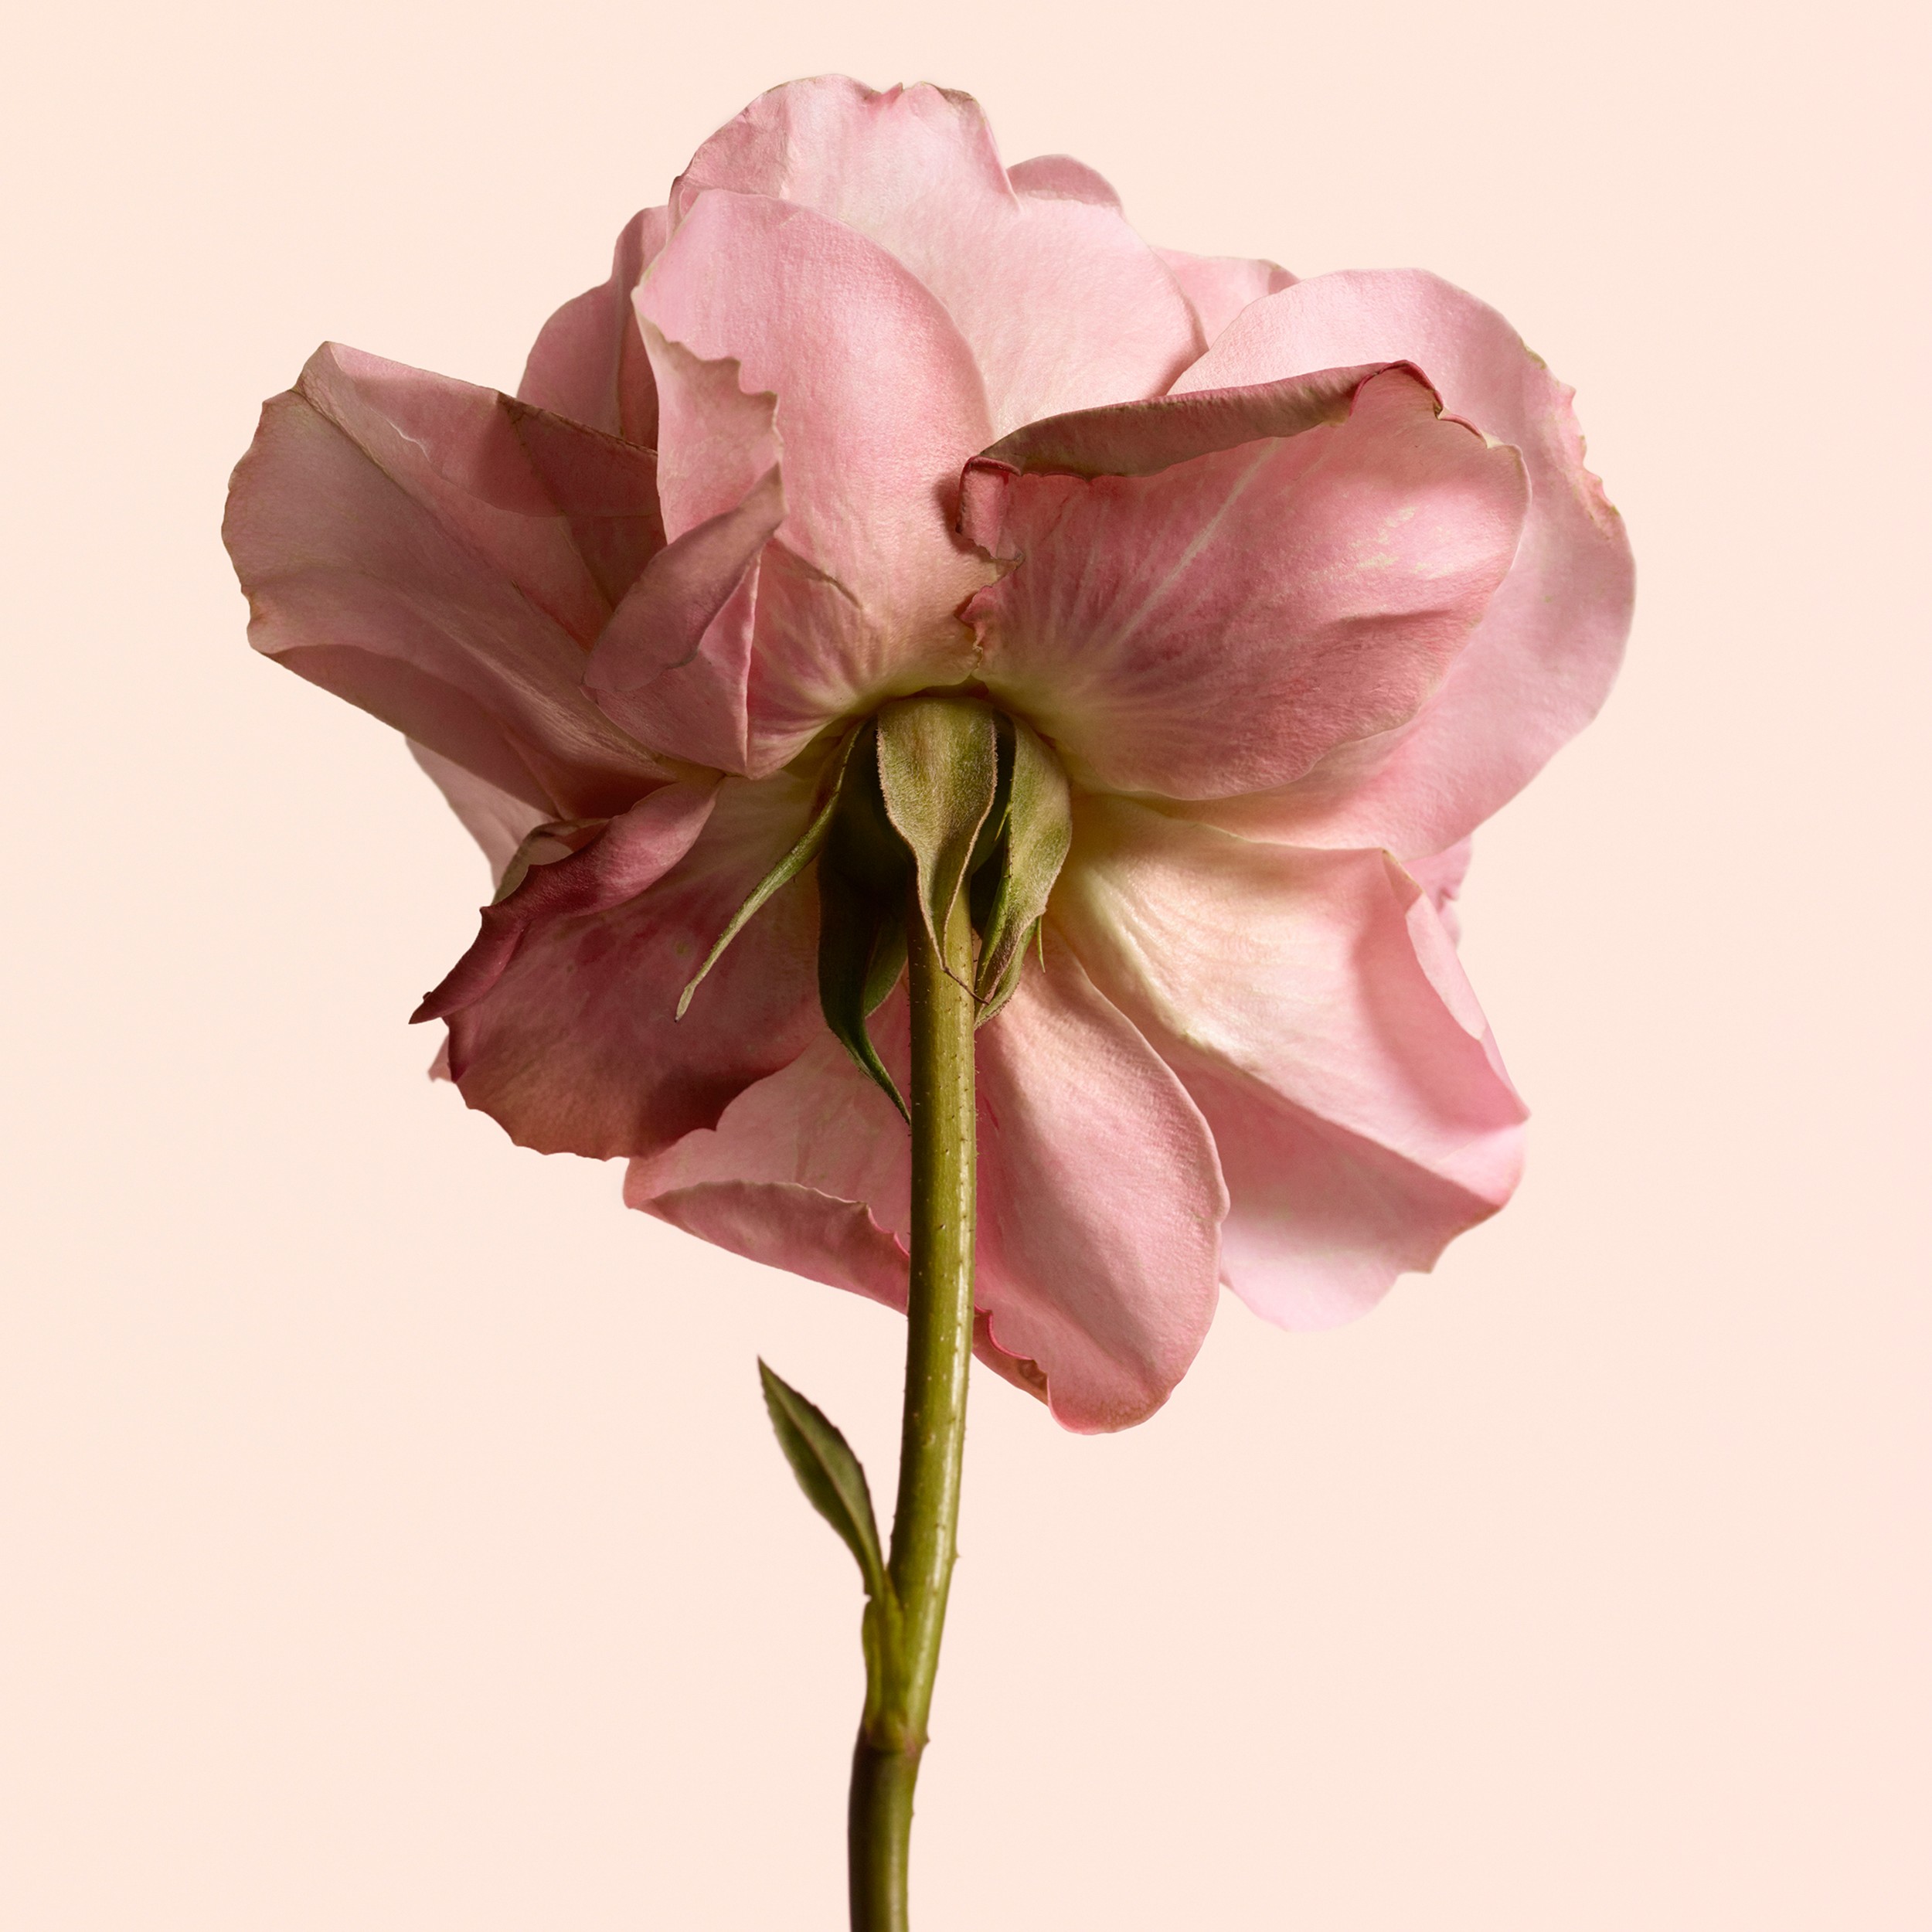 Burberry Signatures Eau de Parfum de 100 ml - Tudor Rose | Burberry® oficial - 4